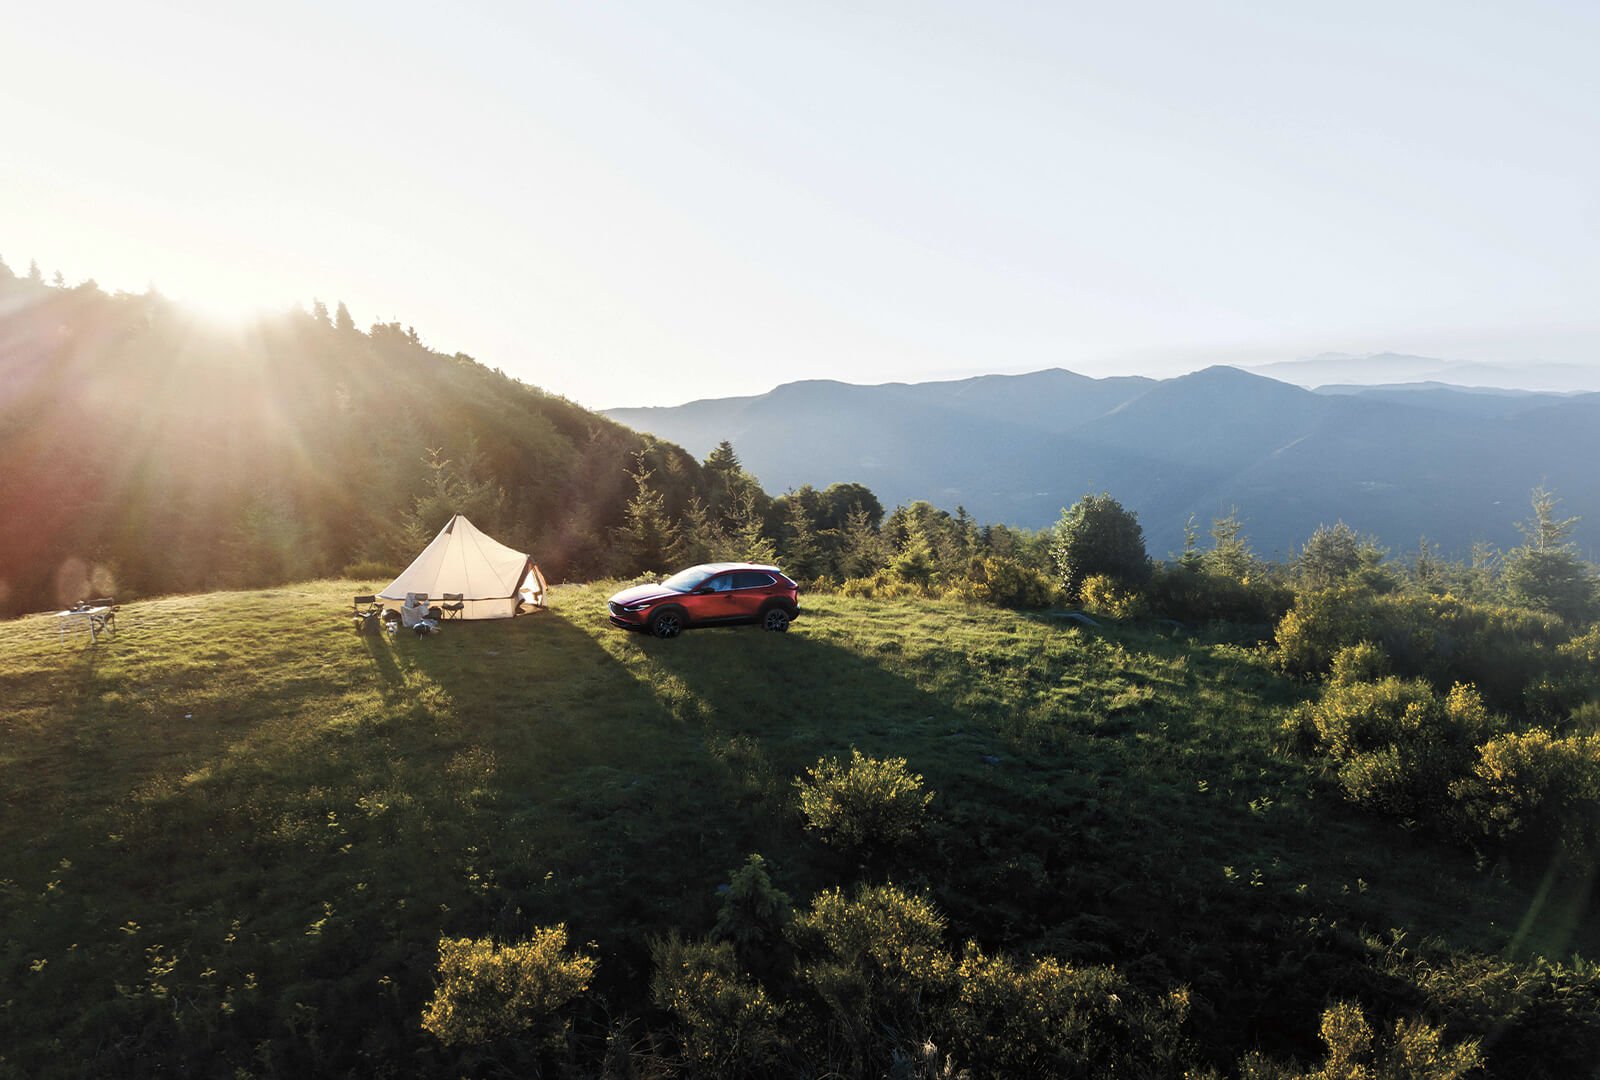 Mazda CX-5 stationné devant une grande tente, sur une verdoyante colline ensoleillée, avec d’autres collines au loin